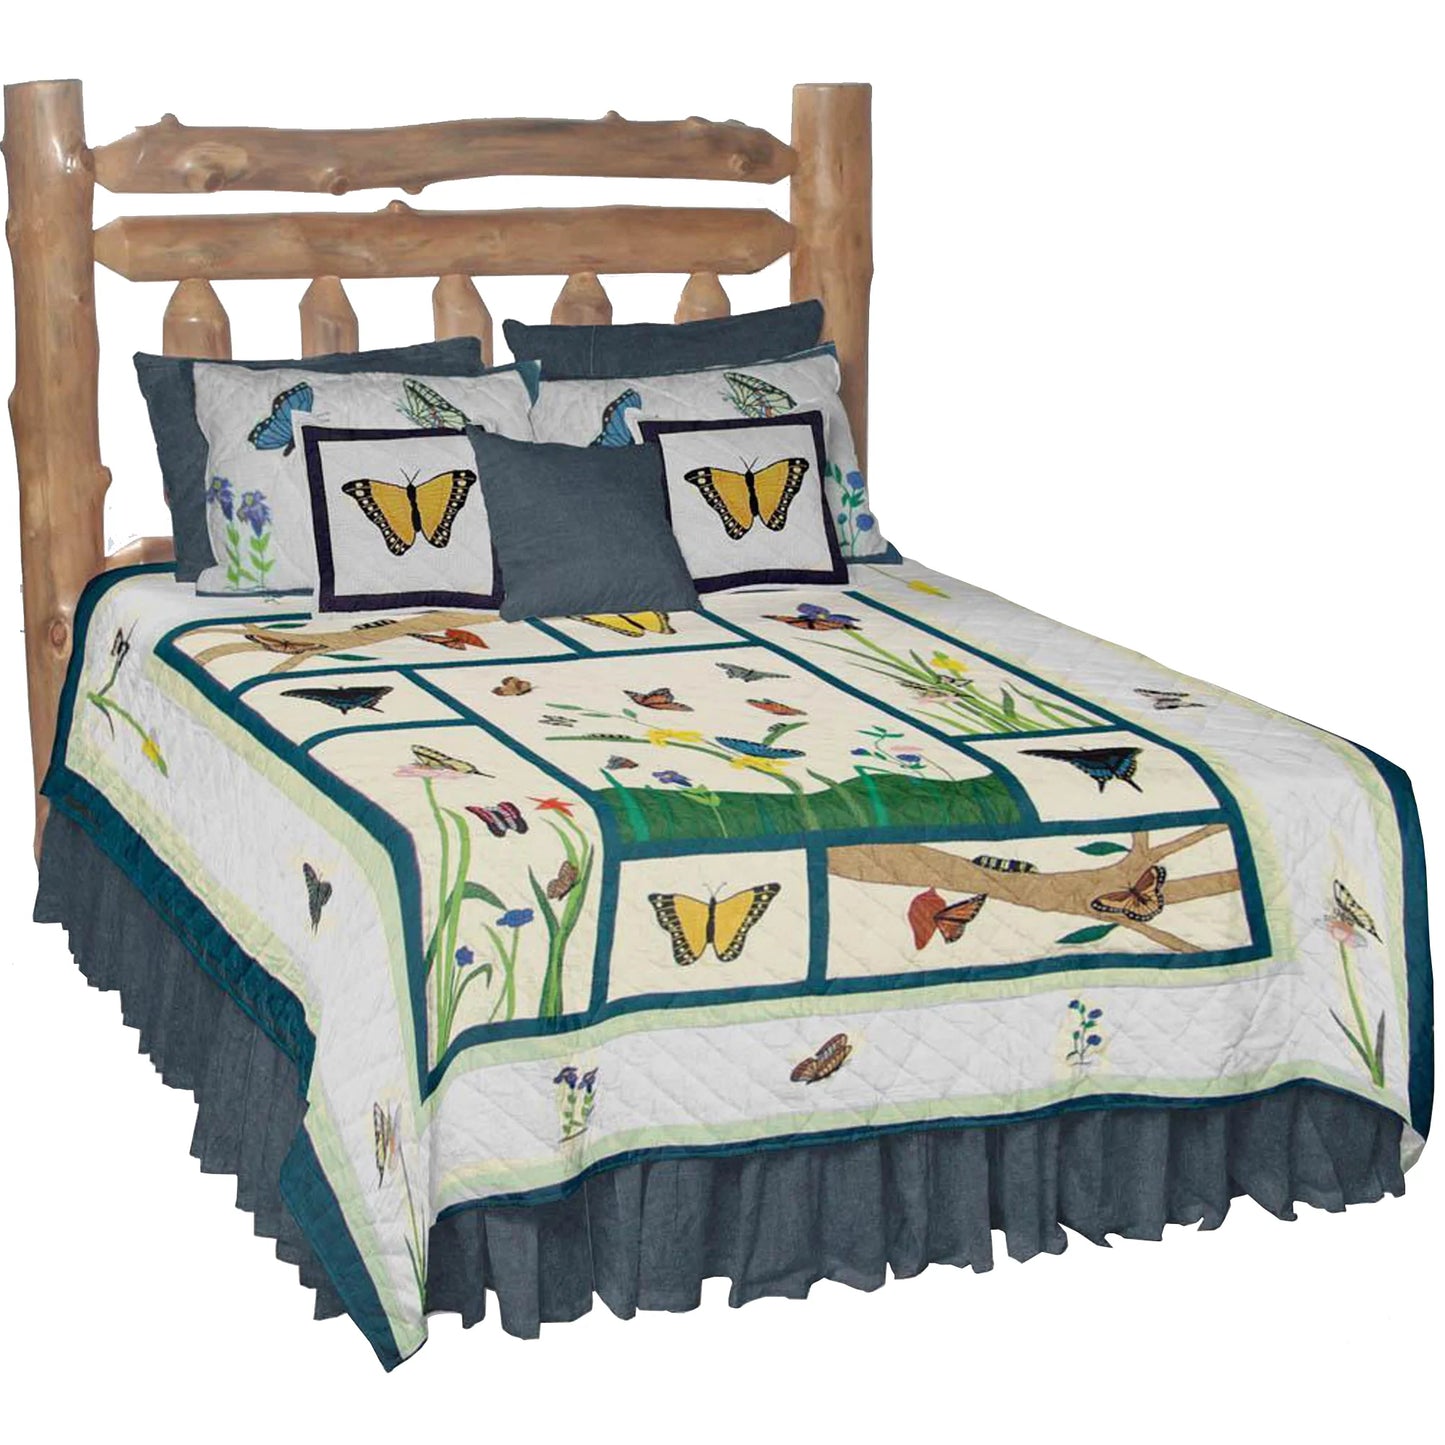 Flutterring Butterflies Quilt, Hand cut and Appliqued cotton fabric motifs.